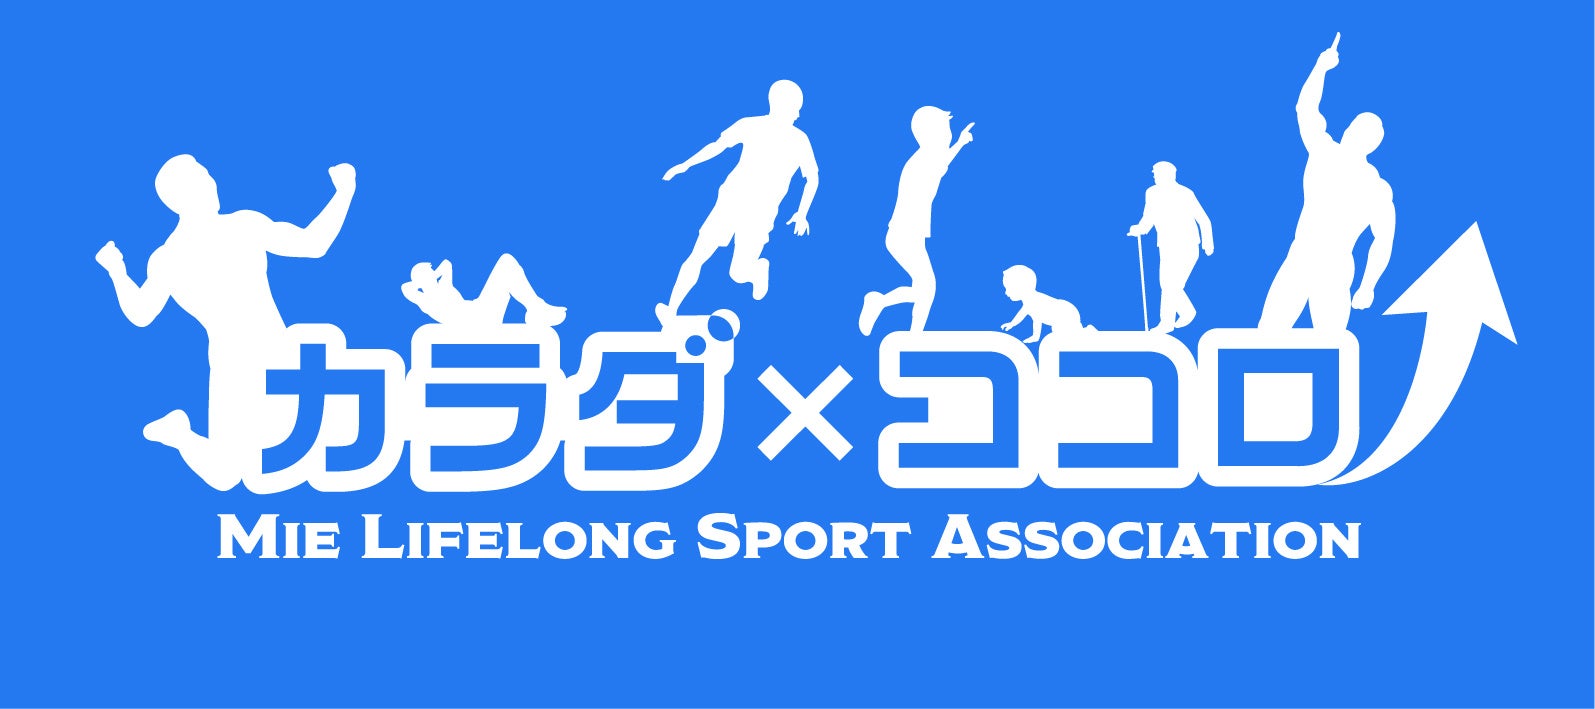 三重県生涯スポーツ協会ロゴ